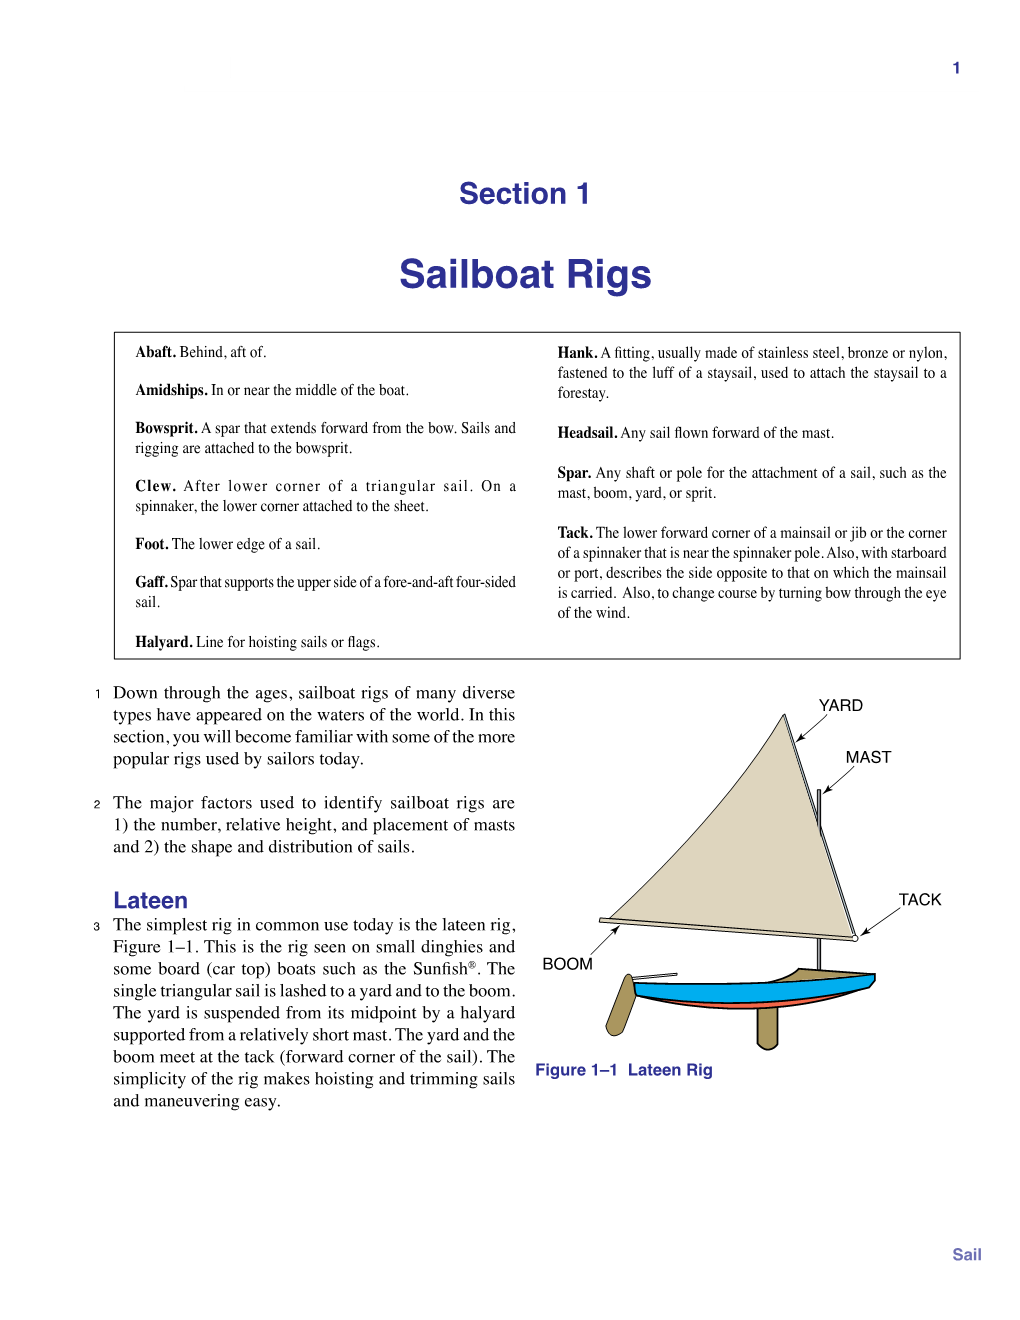 Sailboat Rigs 1